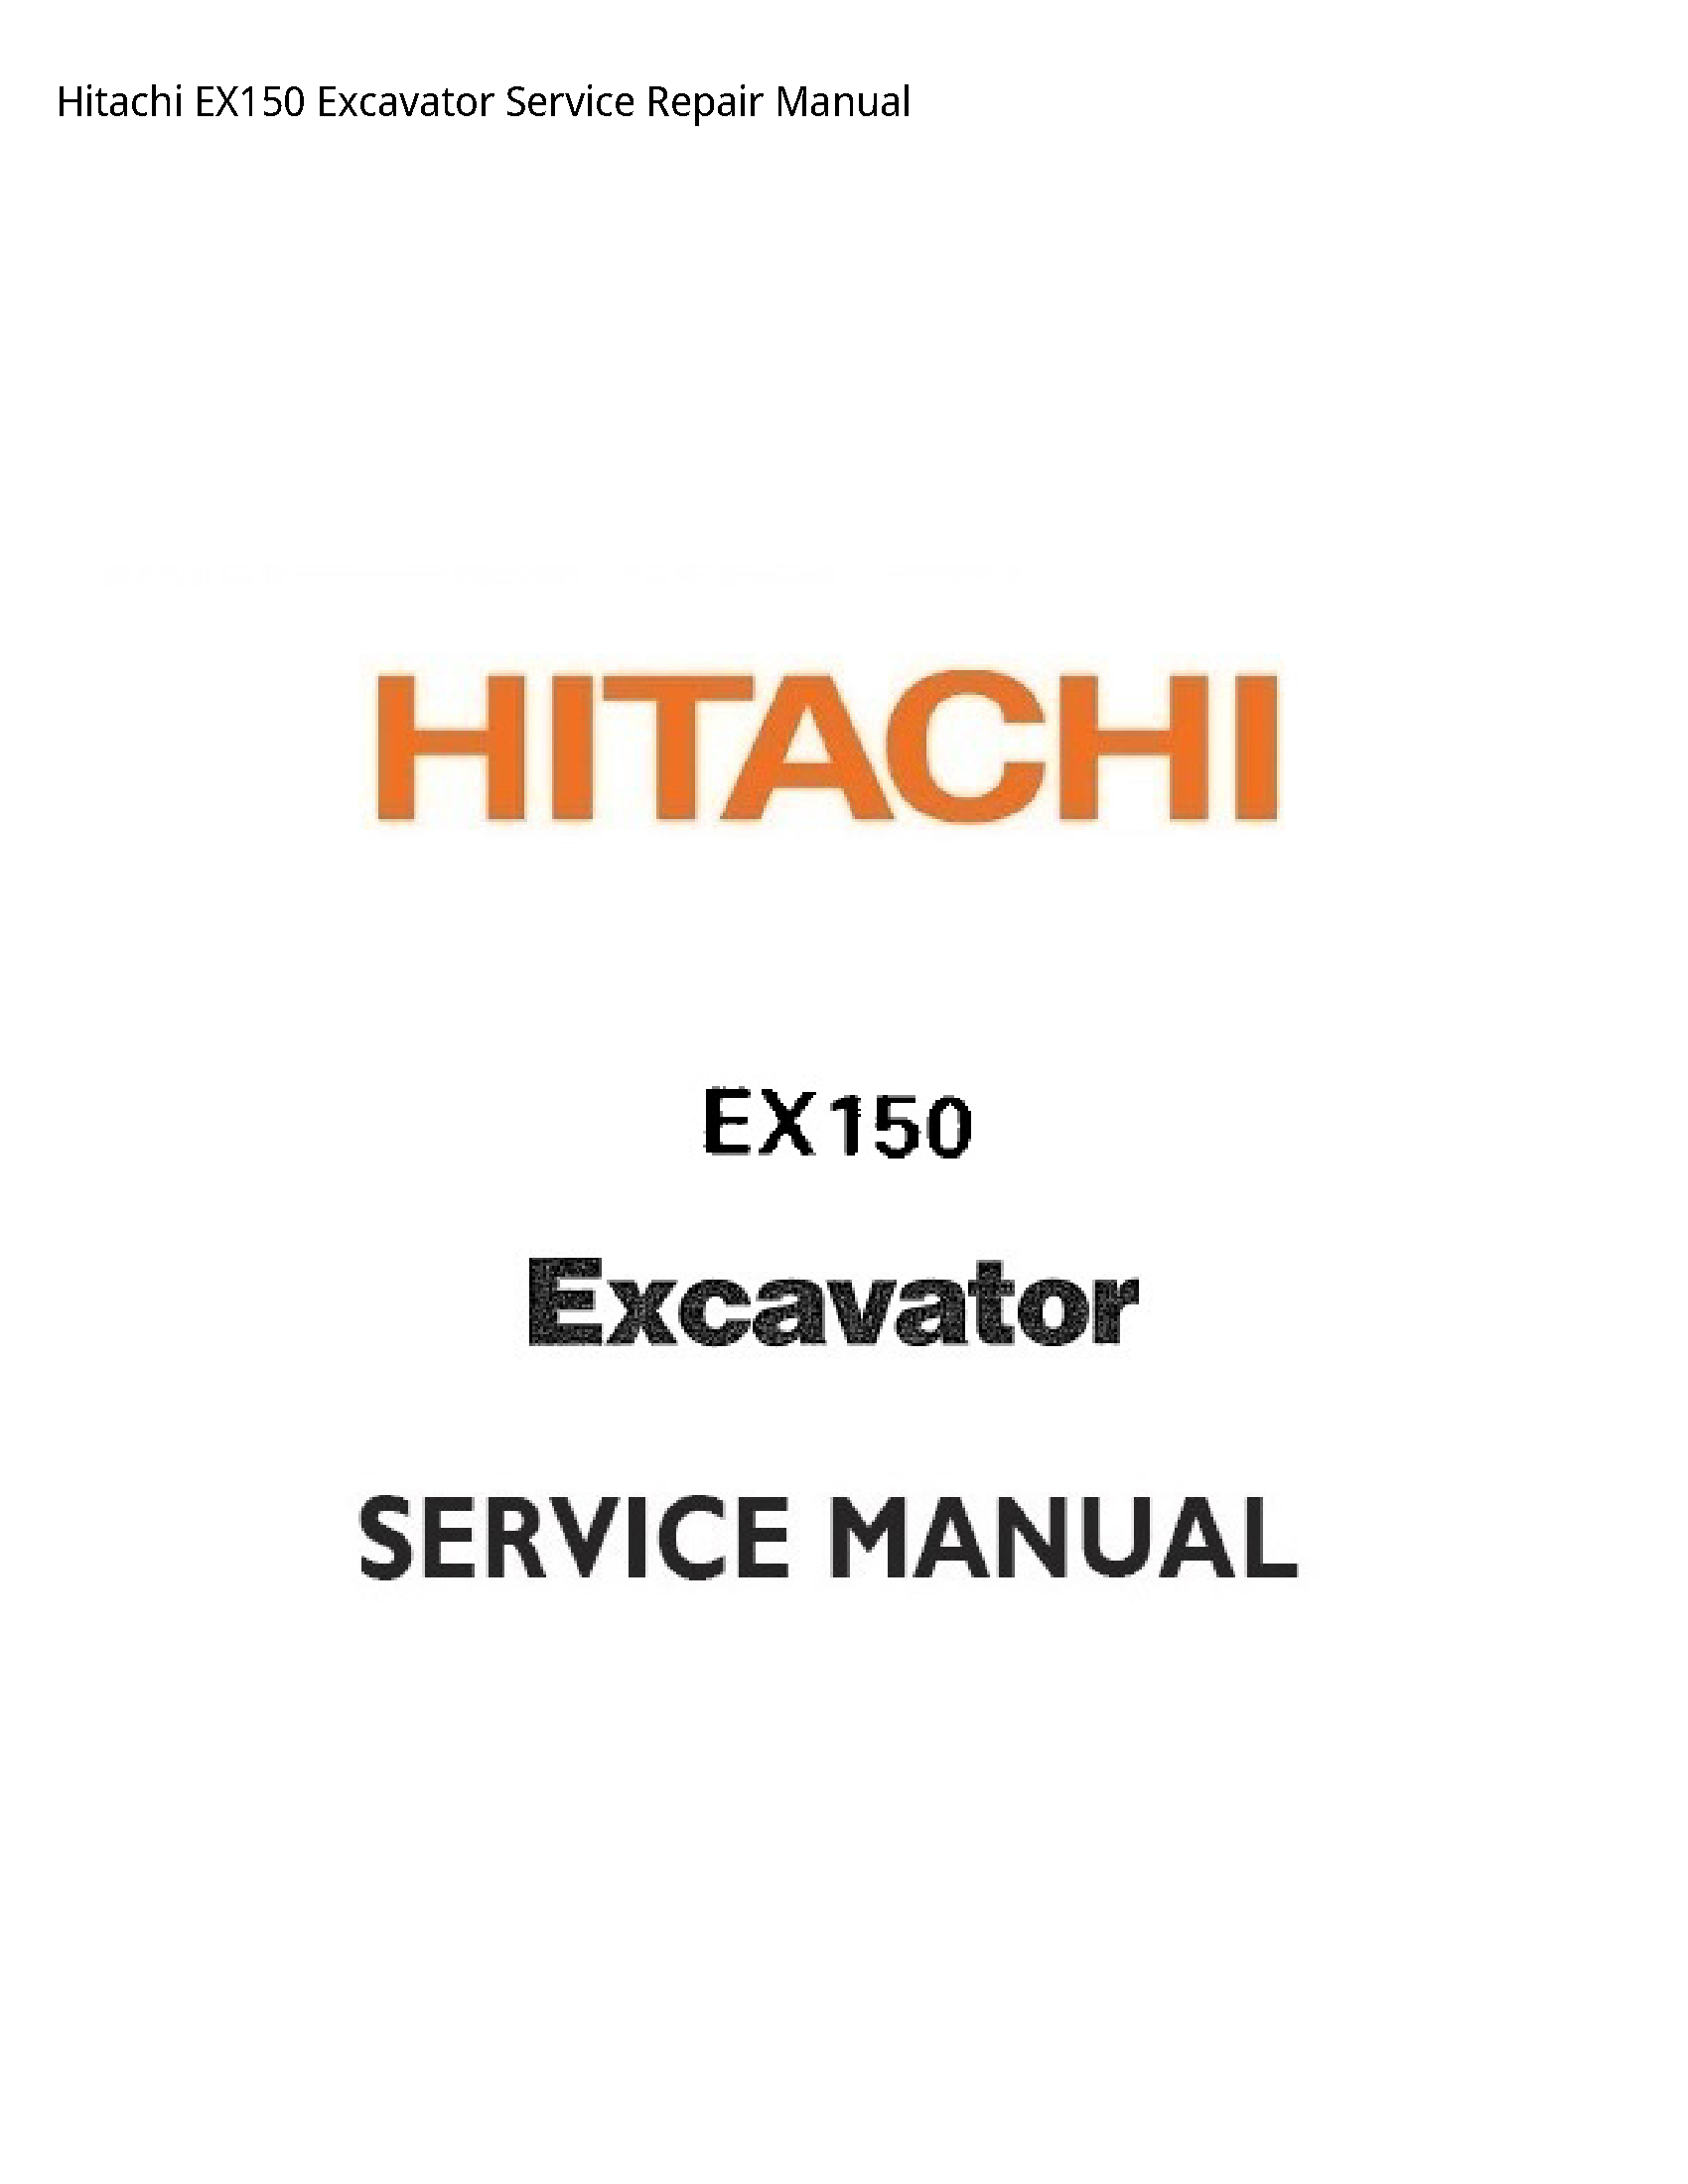 Hitachi EX150 Excavator manual